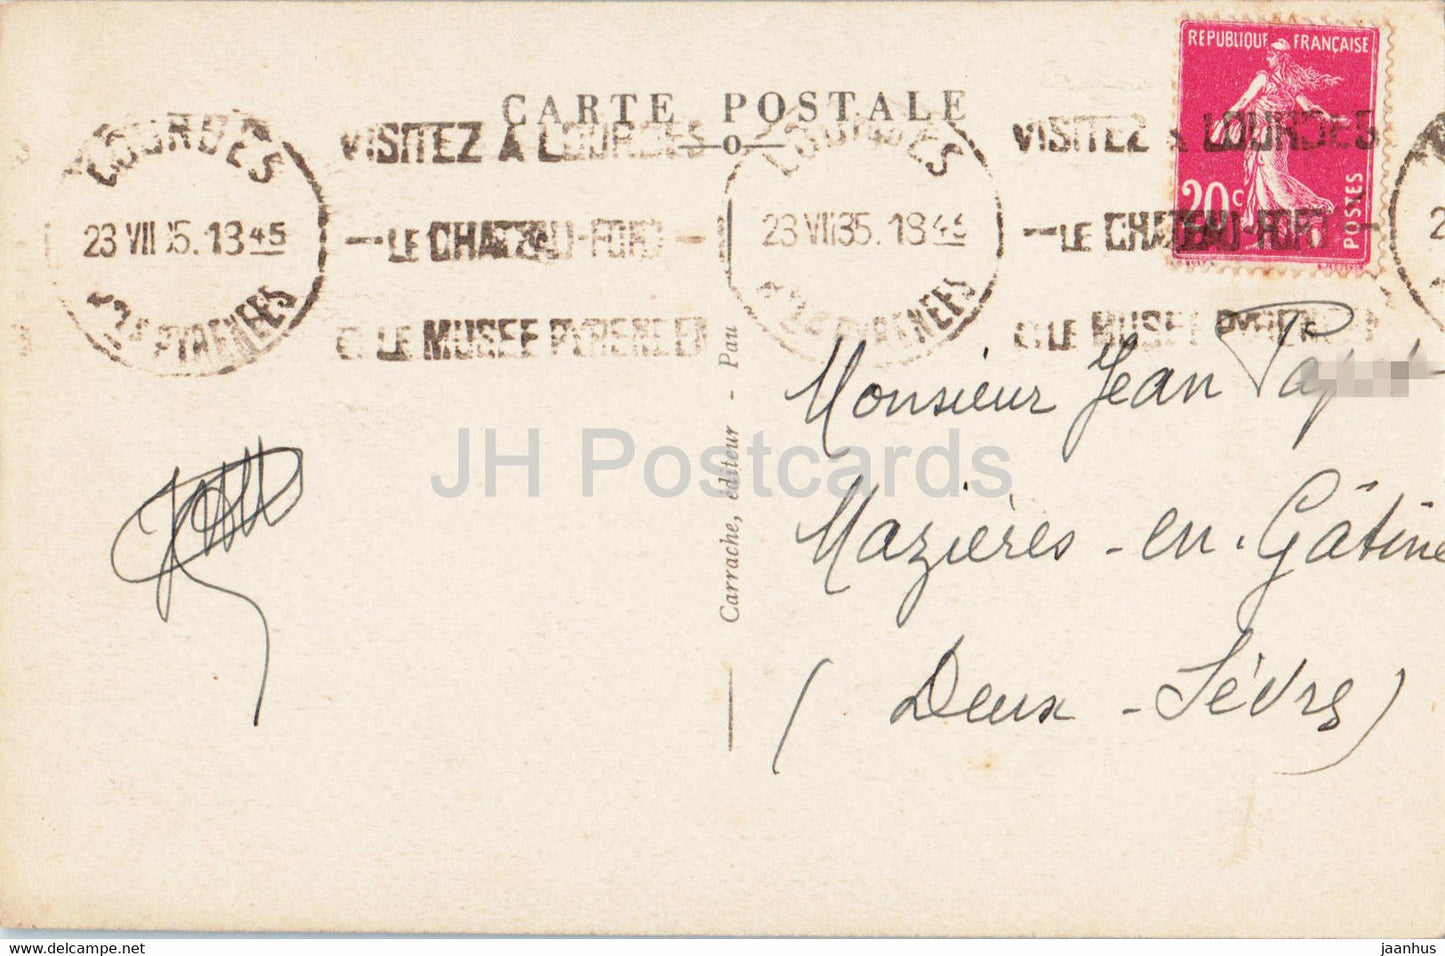 Lourdes - La Basilique - cathedral - 70 - old postcard - 1935 - France - used